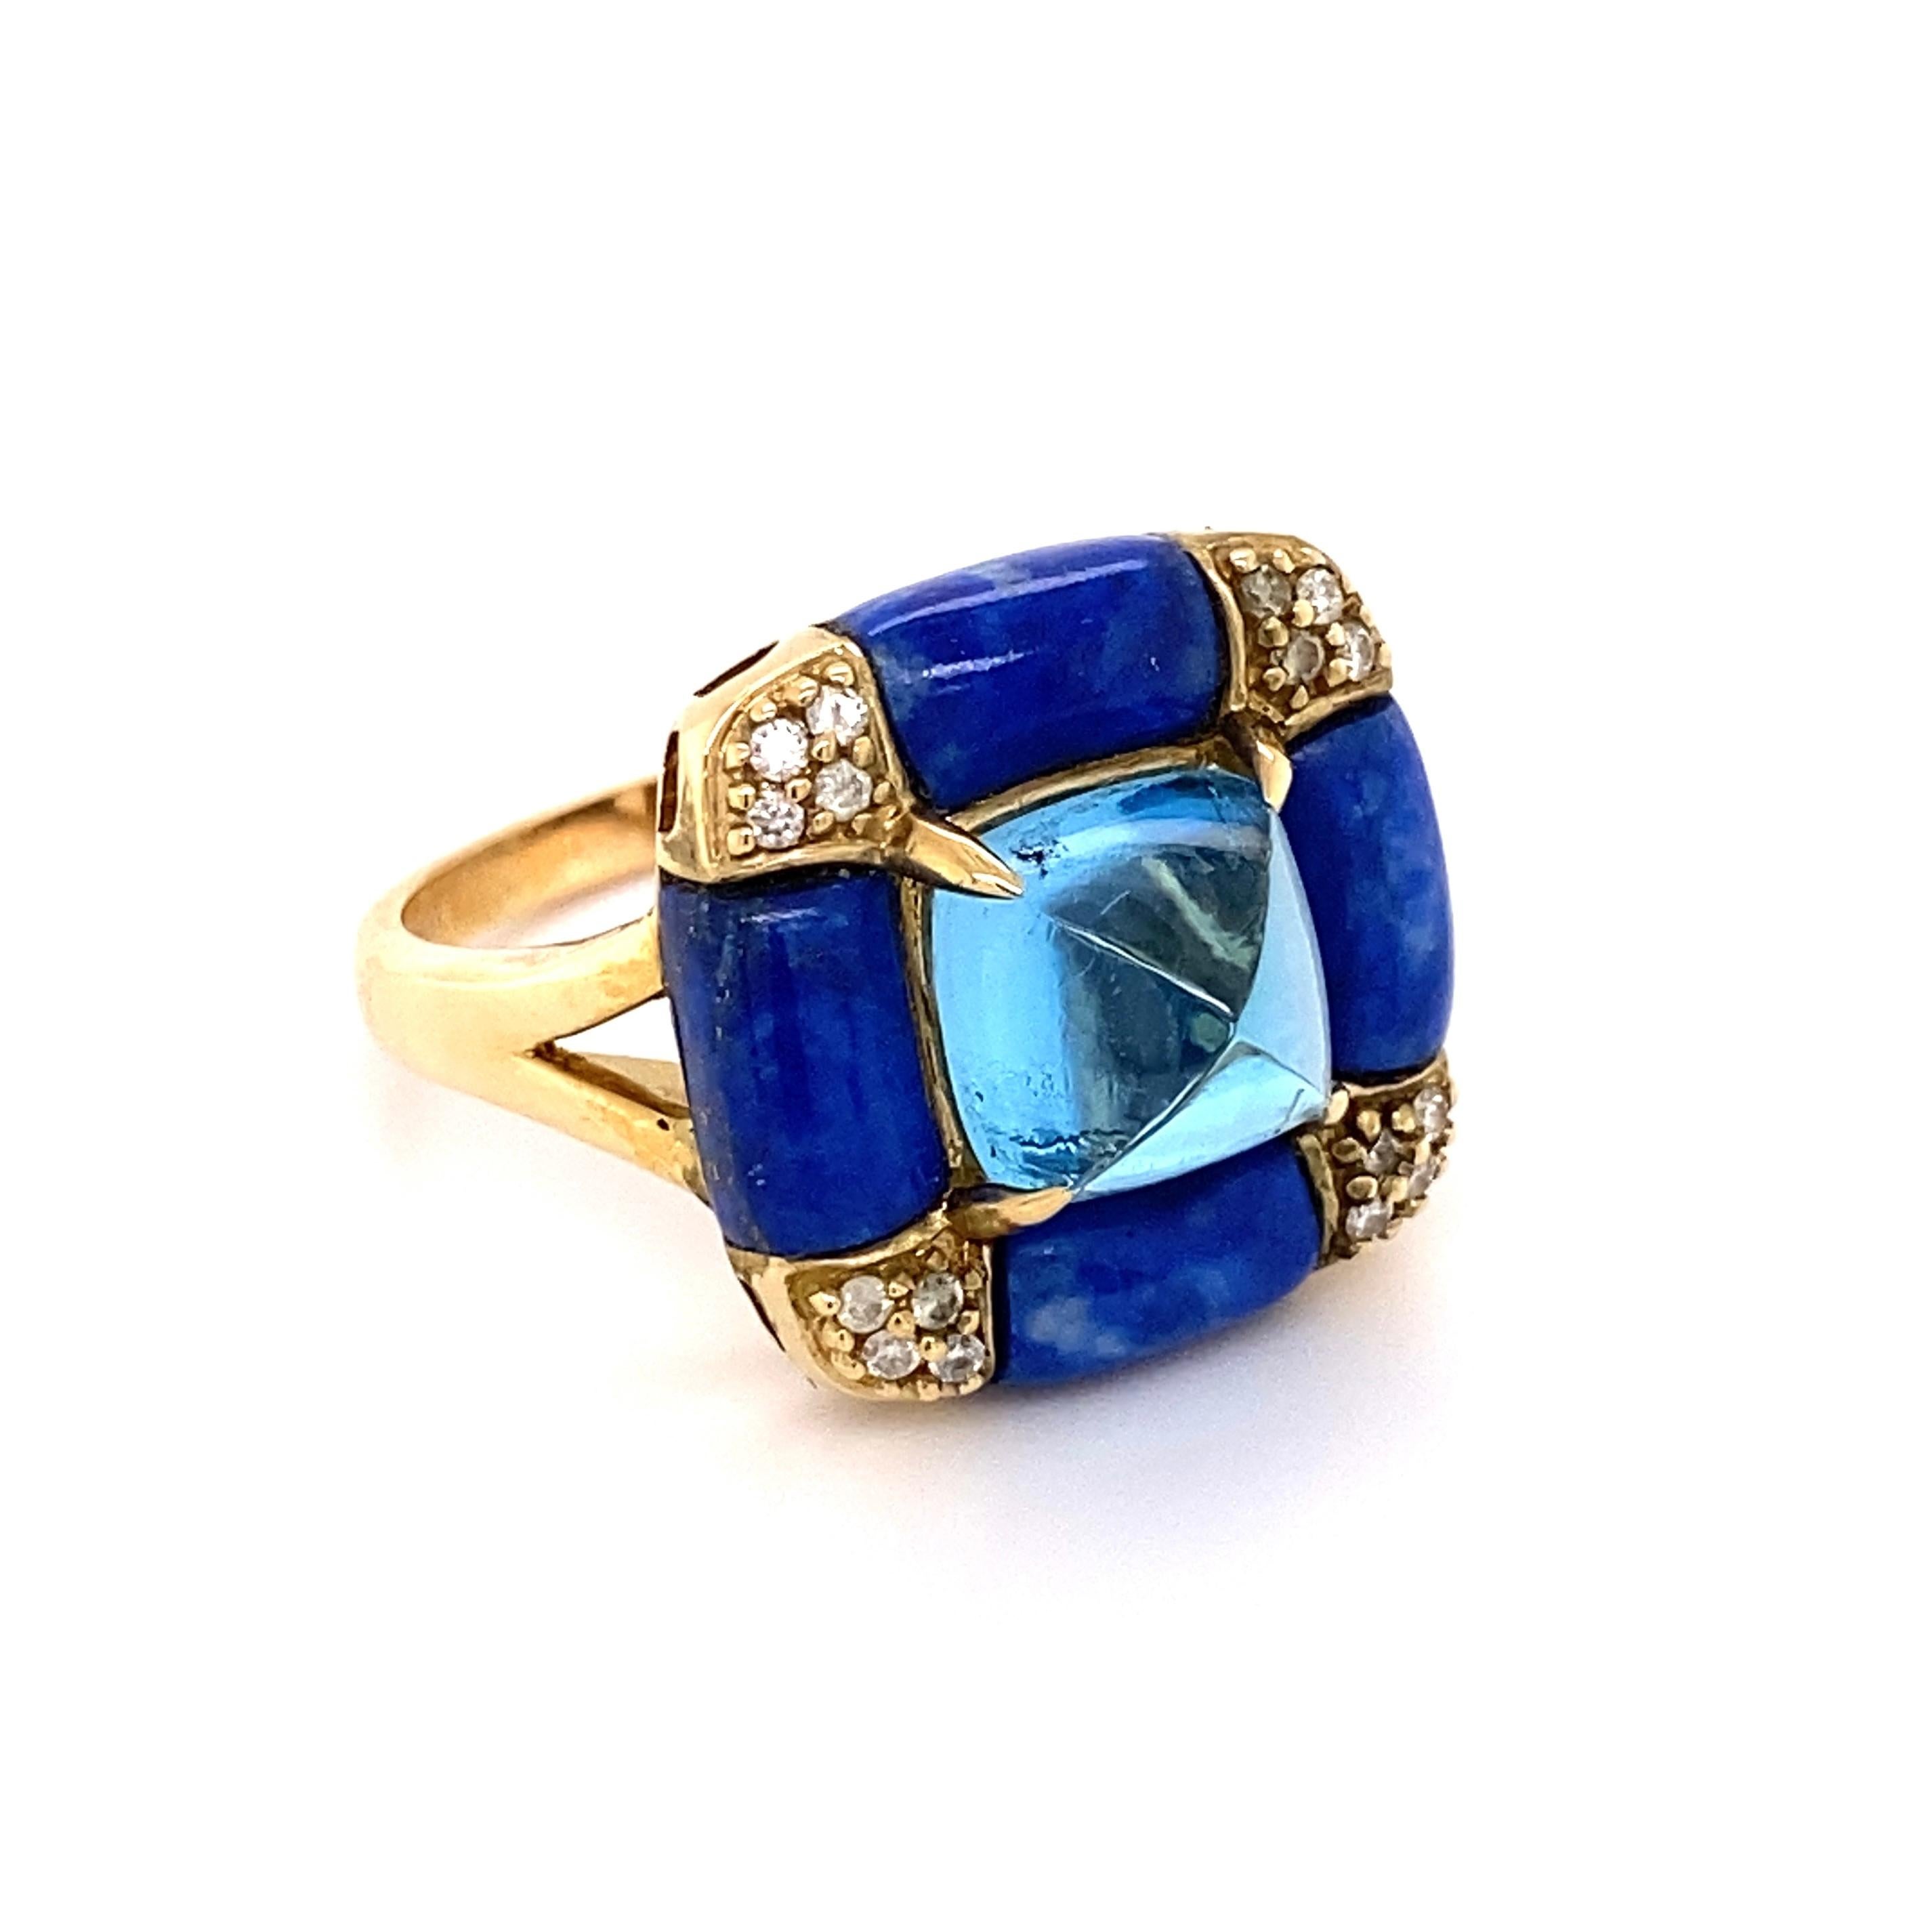 Schöner Art Deco Stil Cocktail Ring, mit einem sicher eingebetteten Sugarloaf Blue Topaz mit einem Gewicht von ca. 5,38 Karat, umgeben von Lapis Lazuli, ca. 7,21tcw und Diamanten, ca. 0,10tcw. Der Ring ist handgefertigt in 14K Gelbgold. Maße: ca.